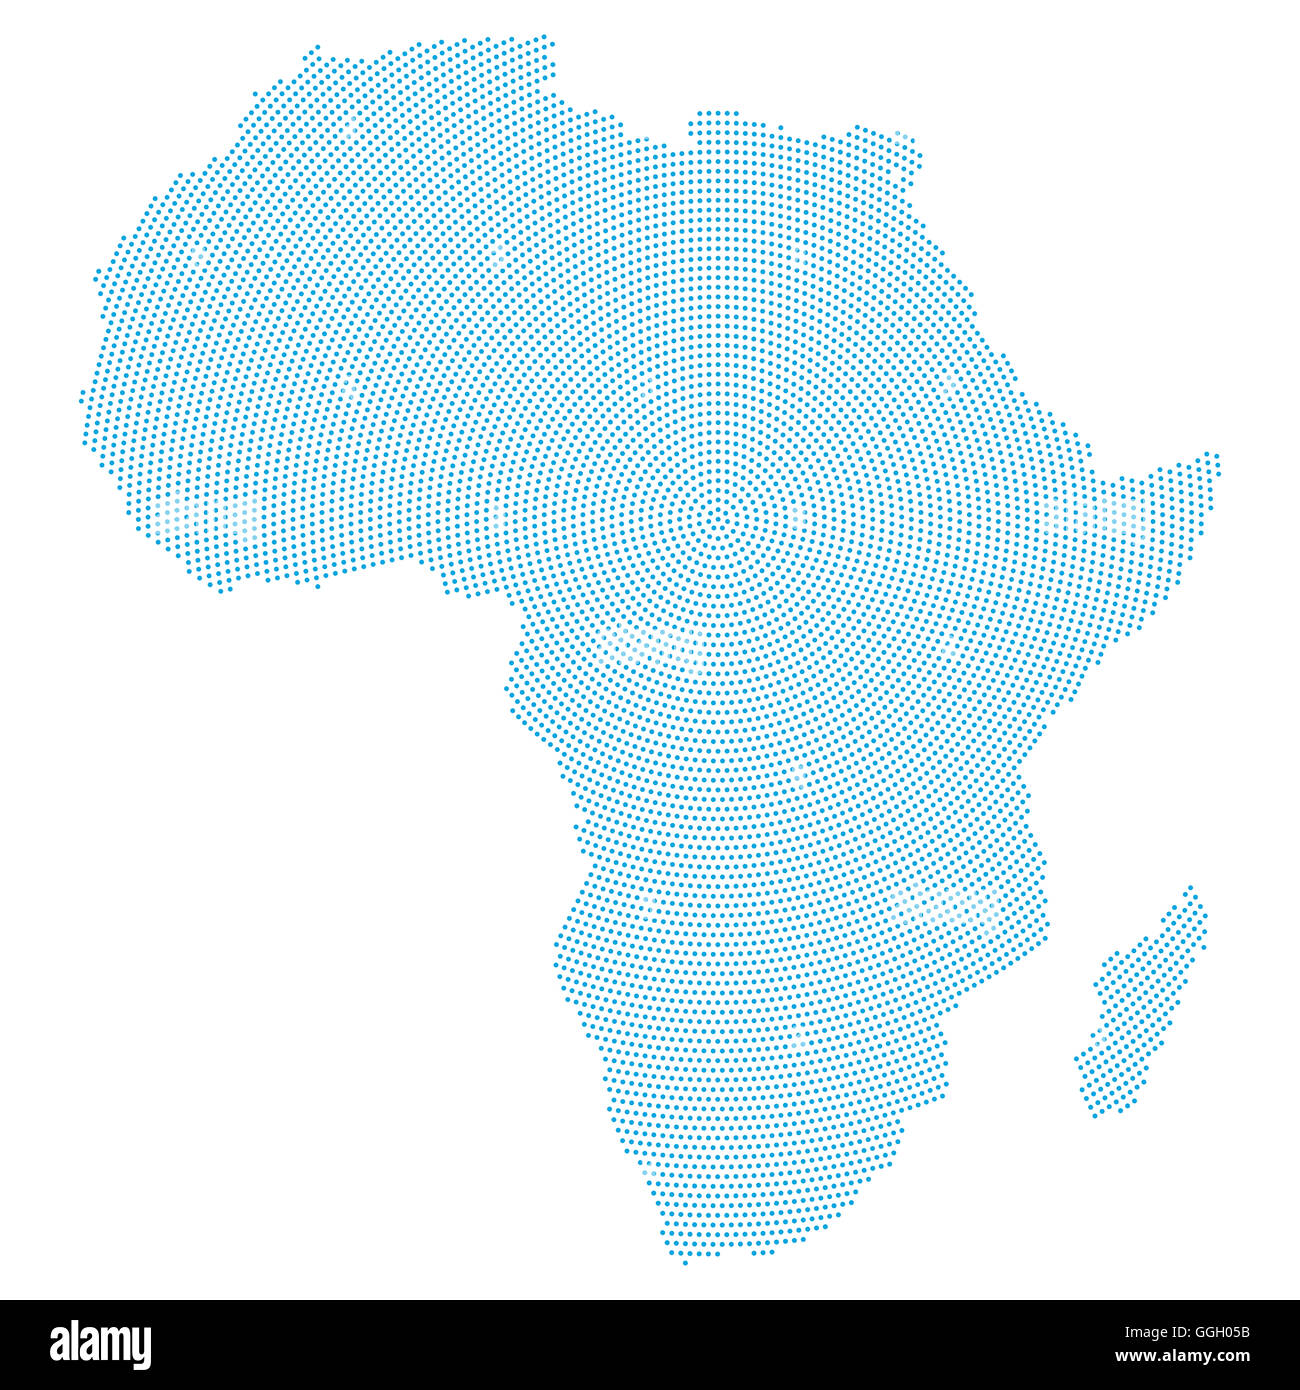 Afrika Karte radial Punktmuster. Blaue Punkte gehen von der Mitte nach außen und bilden die Silhouette des afrikanischen Kontinents Bereich. Stockfoto